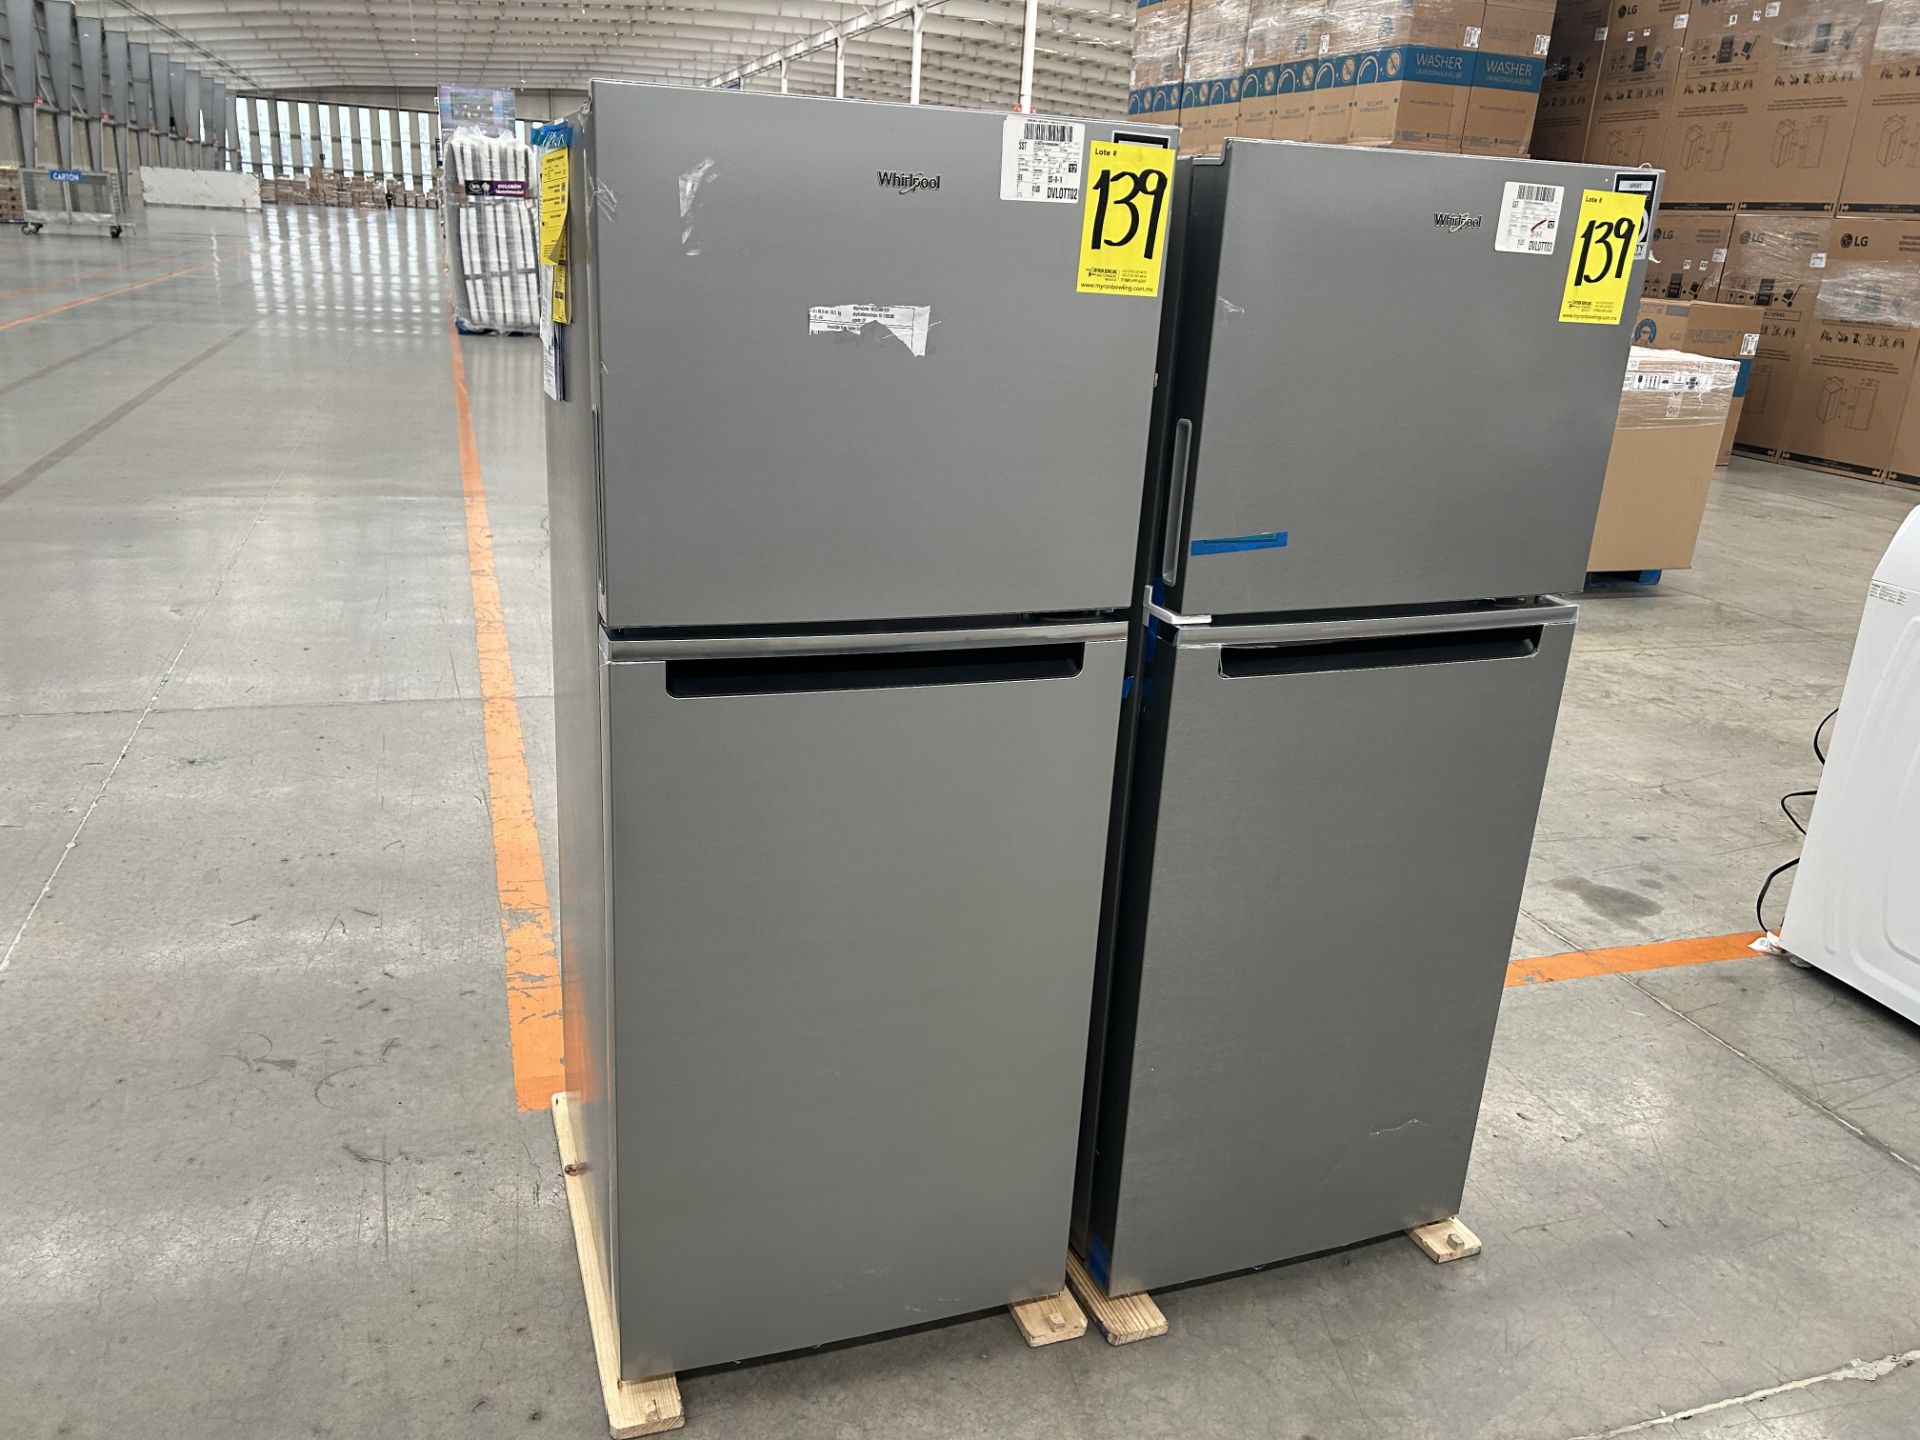 Lote de 2 refrigeradores contiene: 1 refrigerador Marca WHIRPOOL, Modelo WT1230K, Serie 90748, Colo - Image 3 of 6